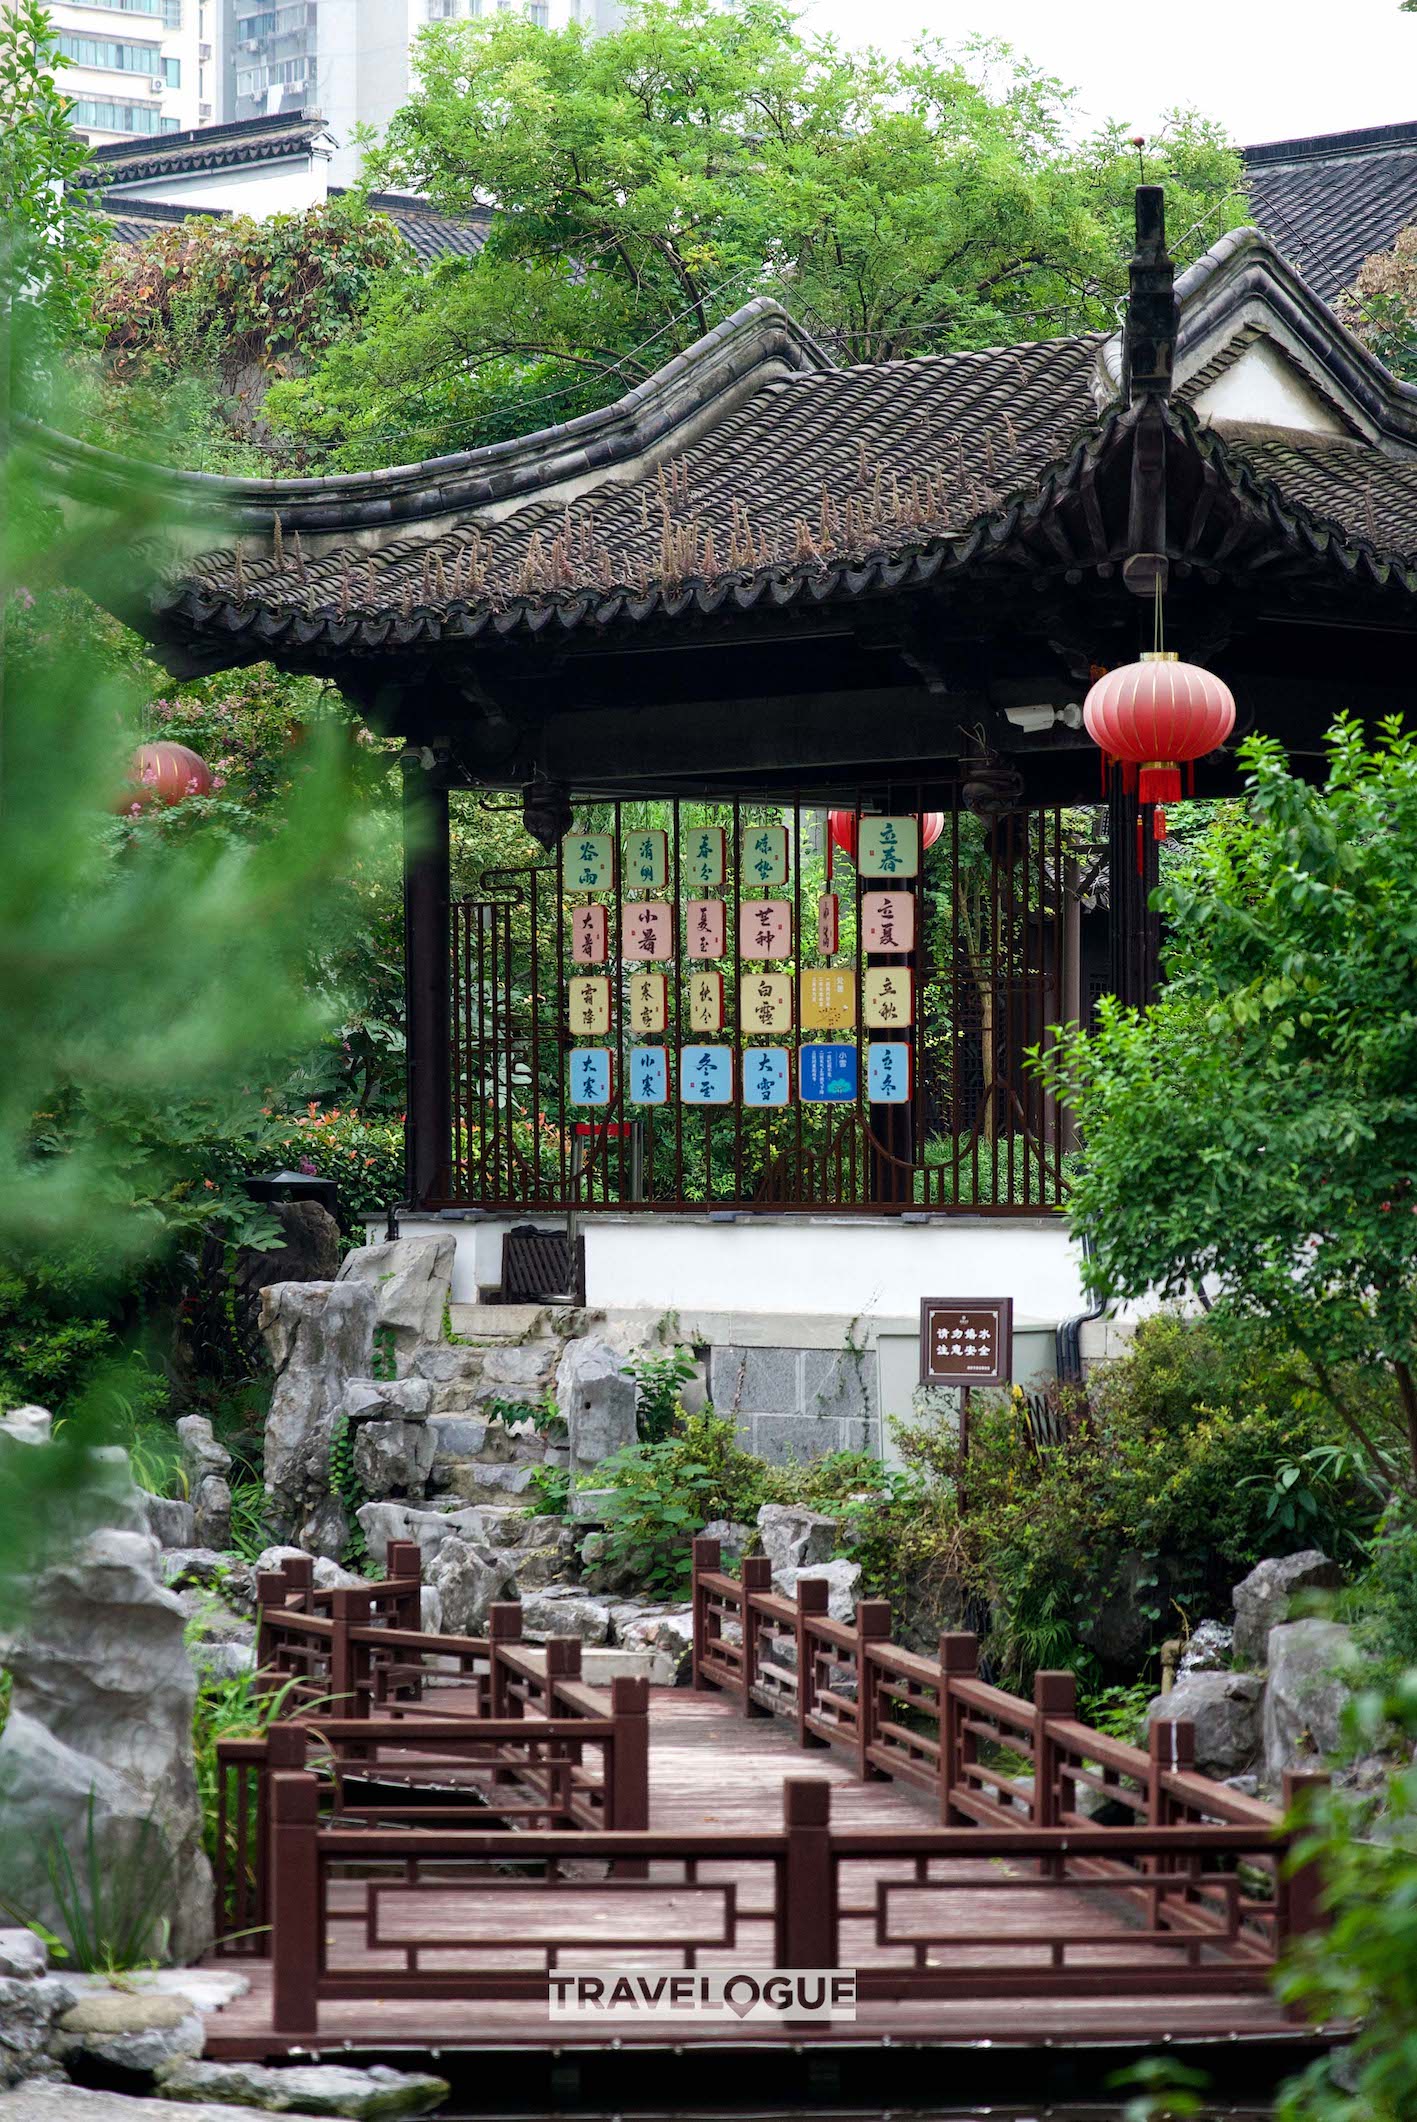 A glimpse of Zhanyuan Garden in Nanjing, Jiangsu Province. /CGTN